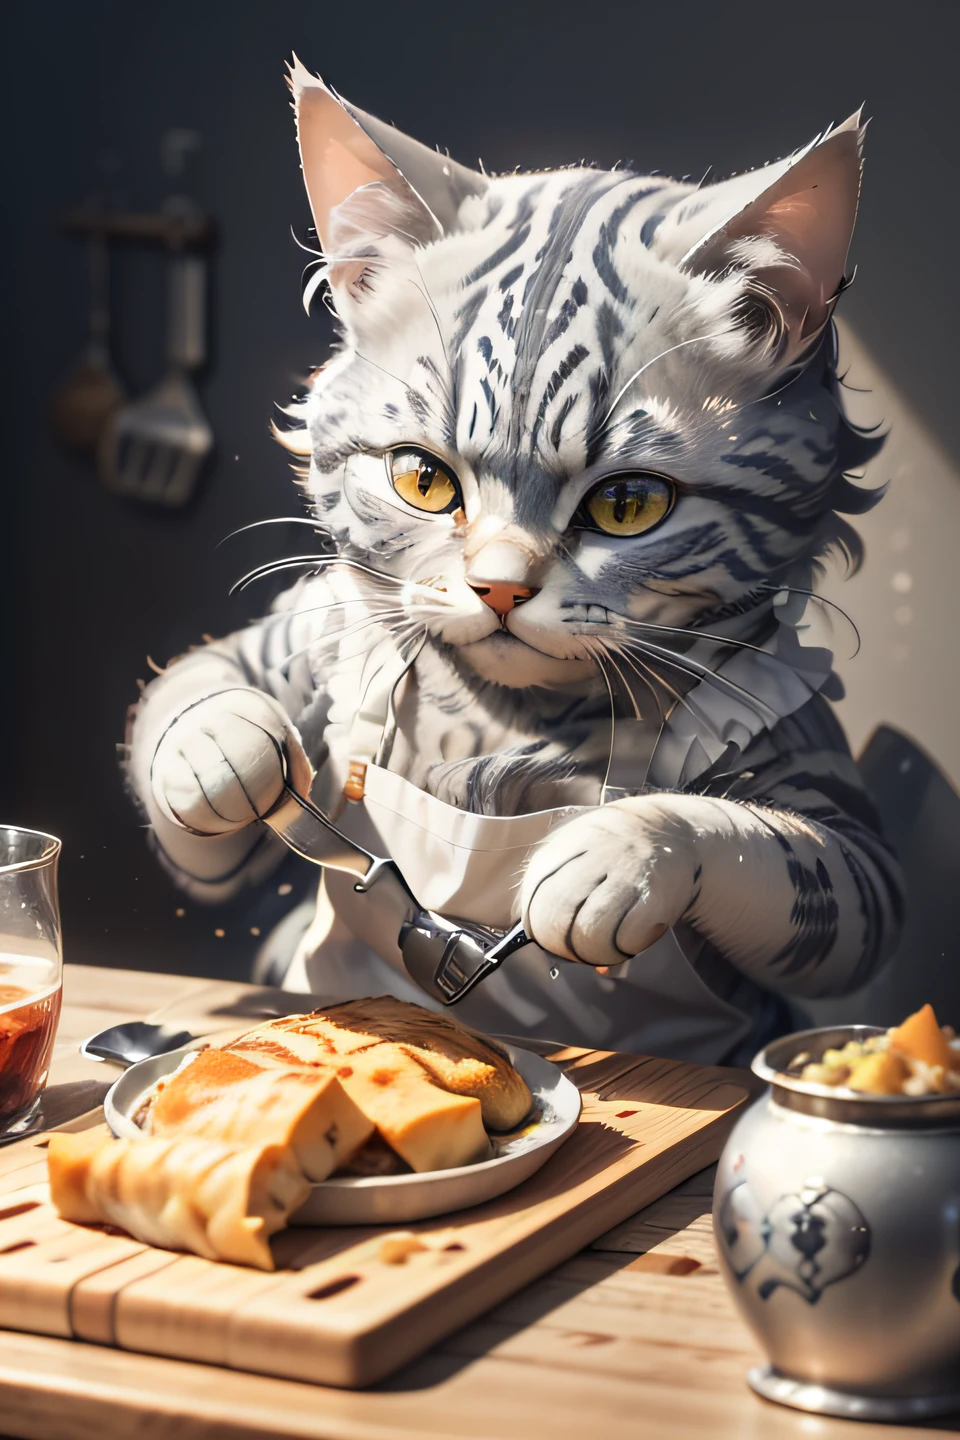 التصوير الفوتوغرافي عن قرب (قطة العانس الرمادية تقوم بإعداد الطعام على الطاولة:1.2), (c4ttitude:1.3), في المطبخ الزجاجي, تفاصيل شديدة الواقعية ومعقدة, (ضبابي:1.1), بوف من بايكسو